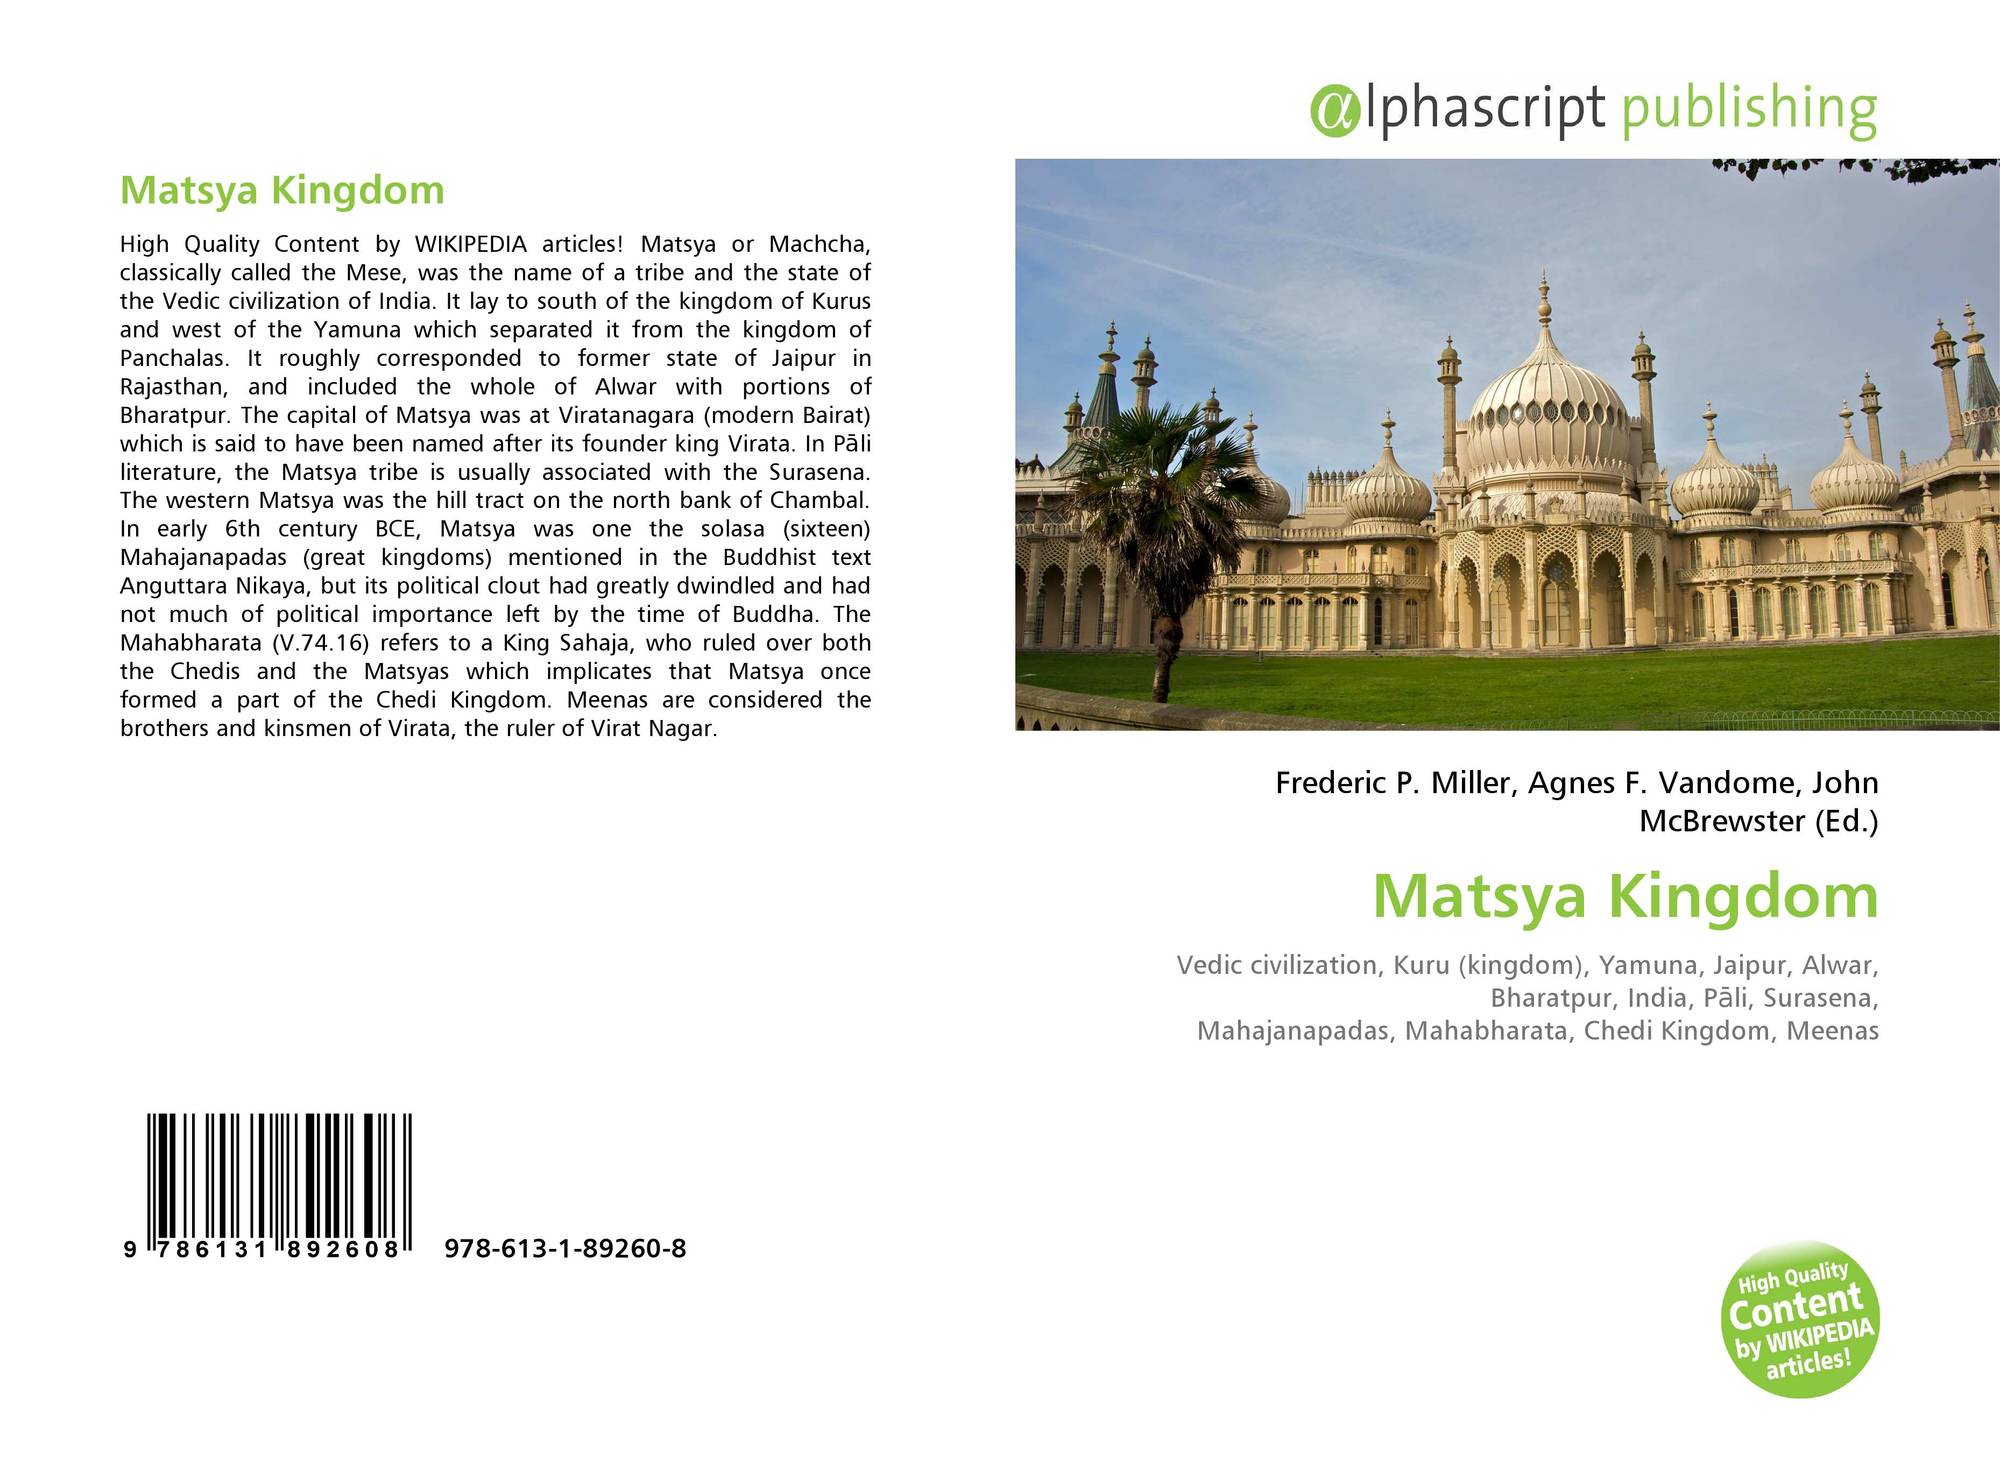 Matsya Kingdom with its Virata Kingdom,
